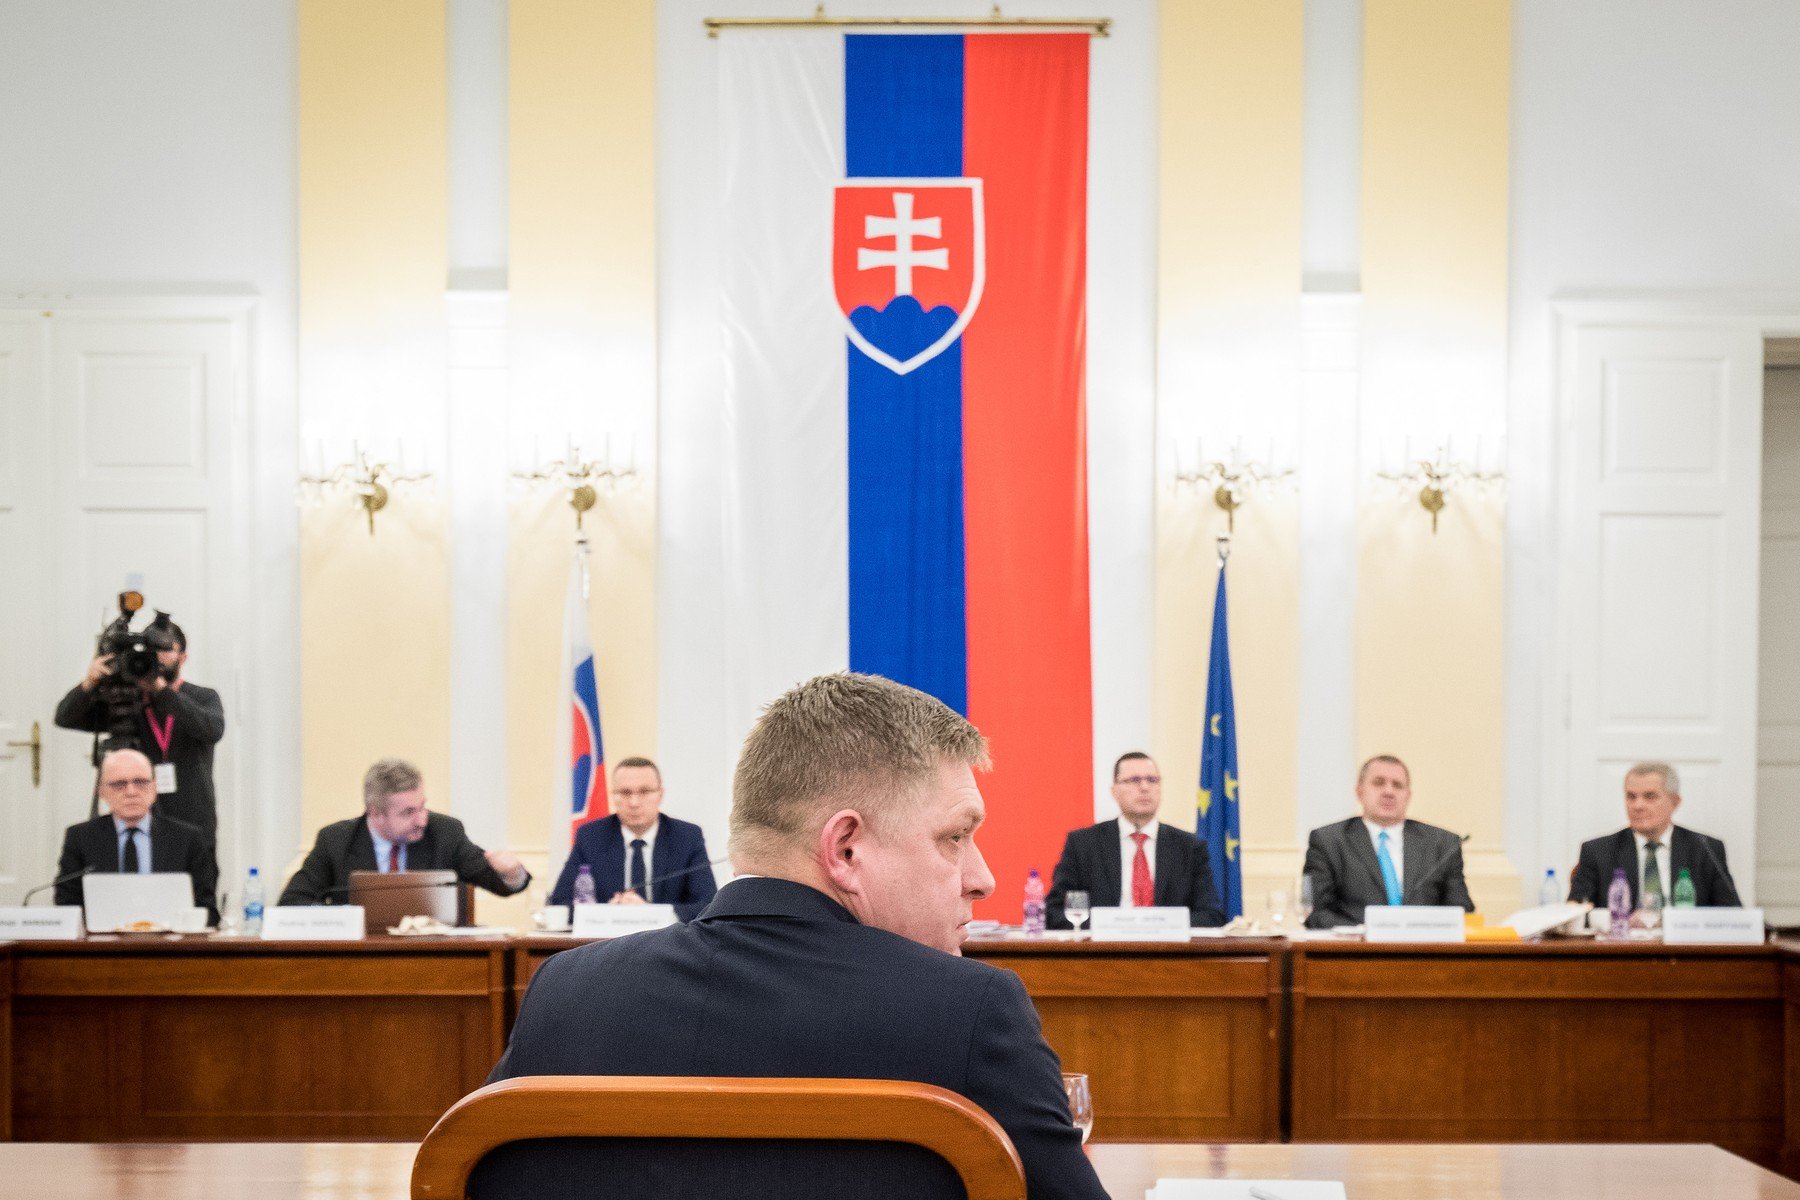 Slovenský expremiér Robert Fico odpovídal na dotazy poslanců, proč chce být členem ústavního soudu